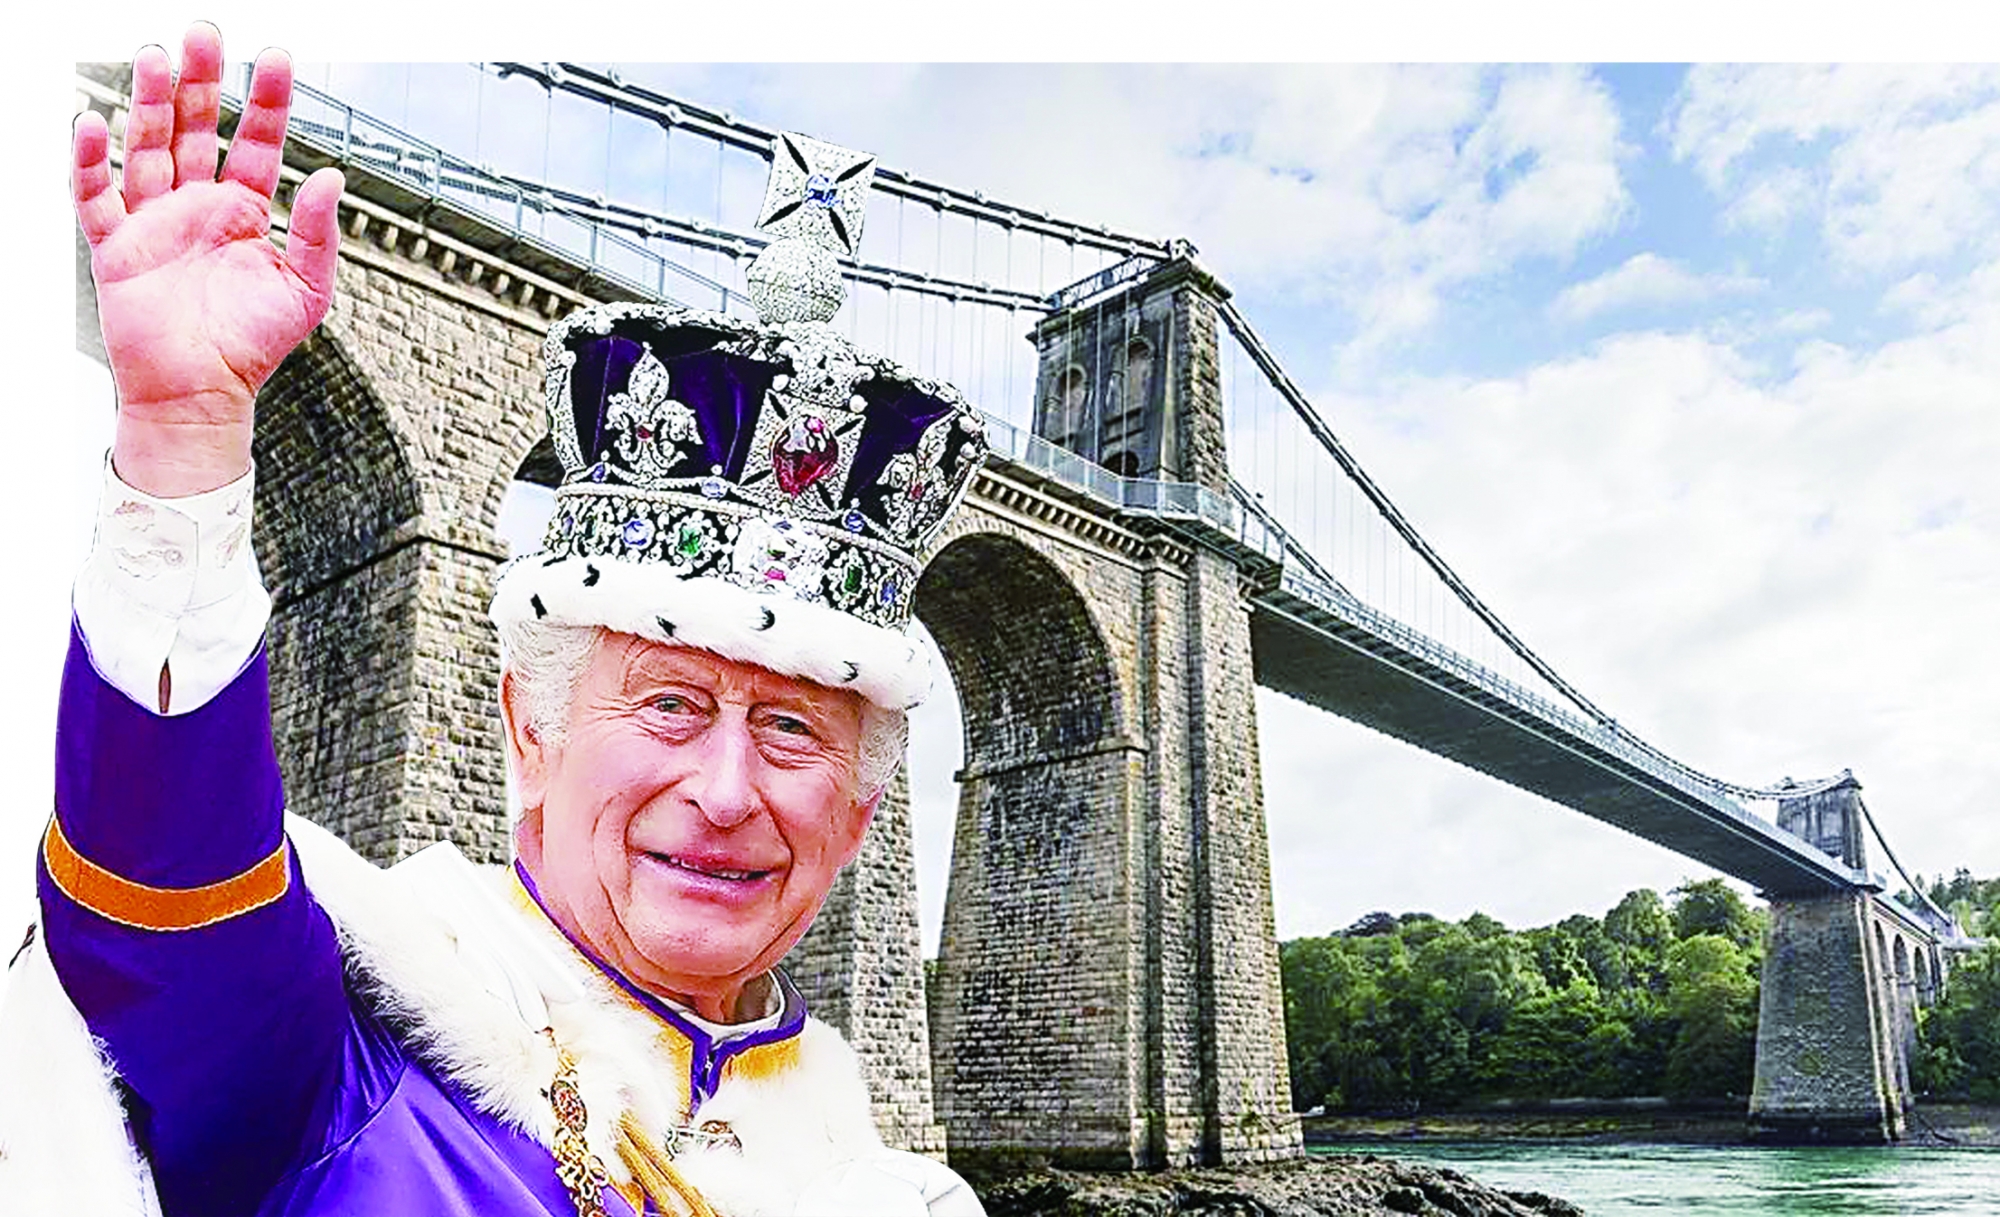 查尔斯三世在王储时期的封号是威尔士亲王，而梅奈桥刚好就是威尔士最重要的悬索桥，为此，“梅奈桥”成为查尔斯三世的代号。